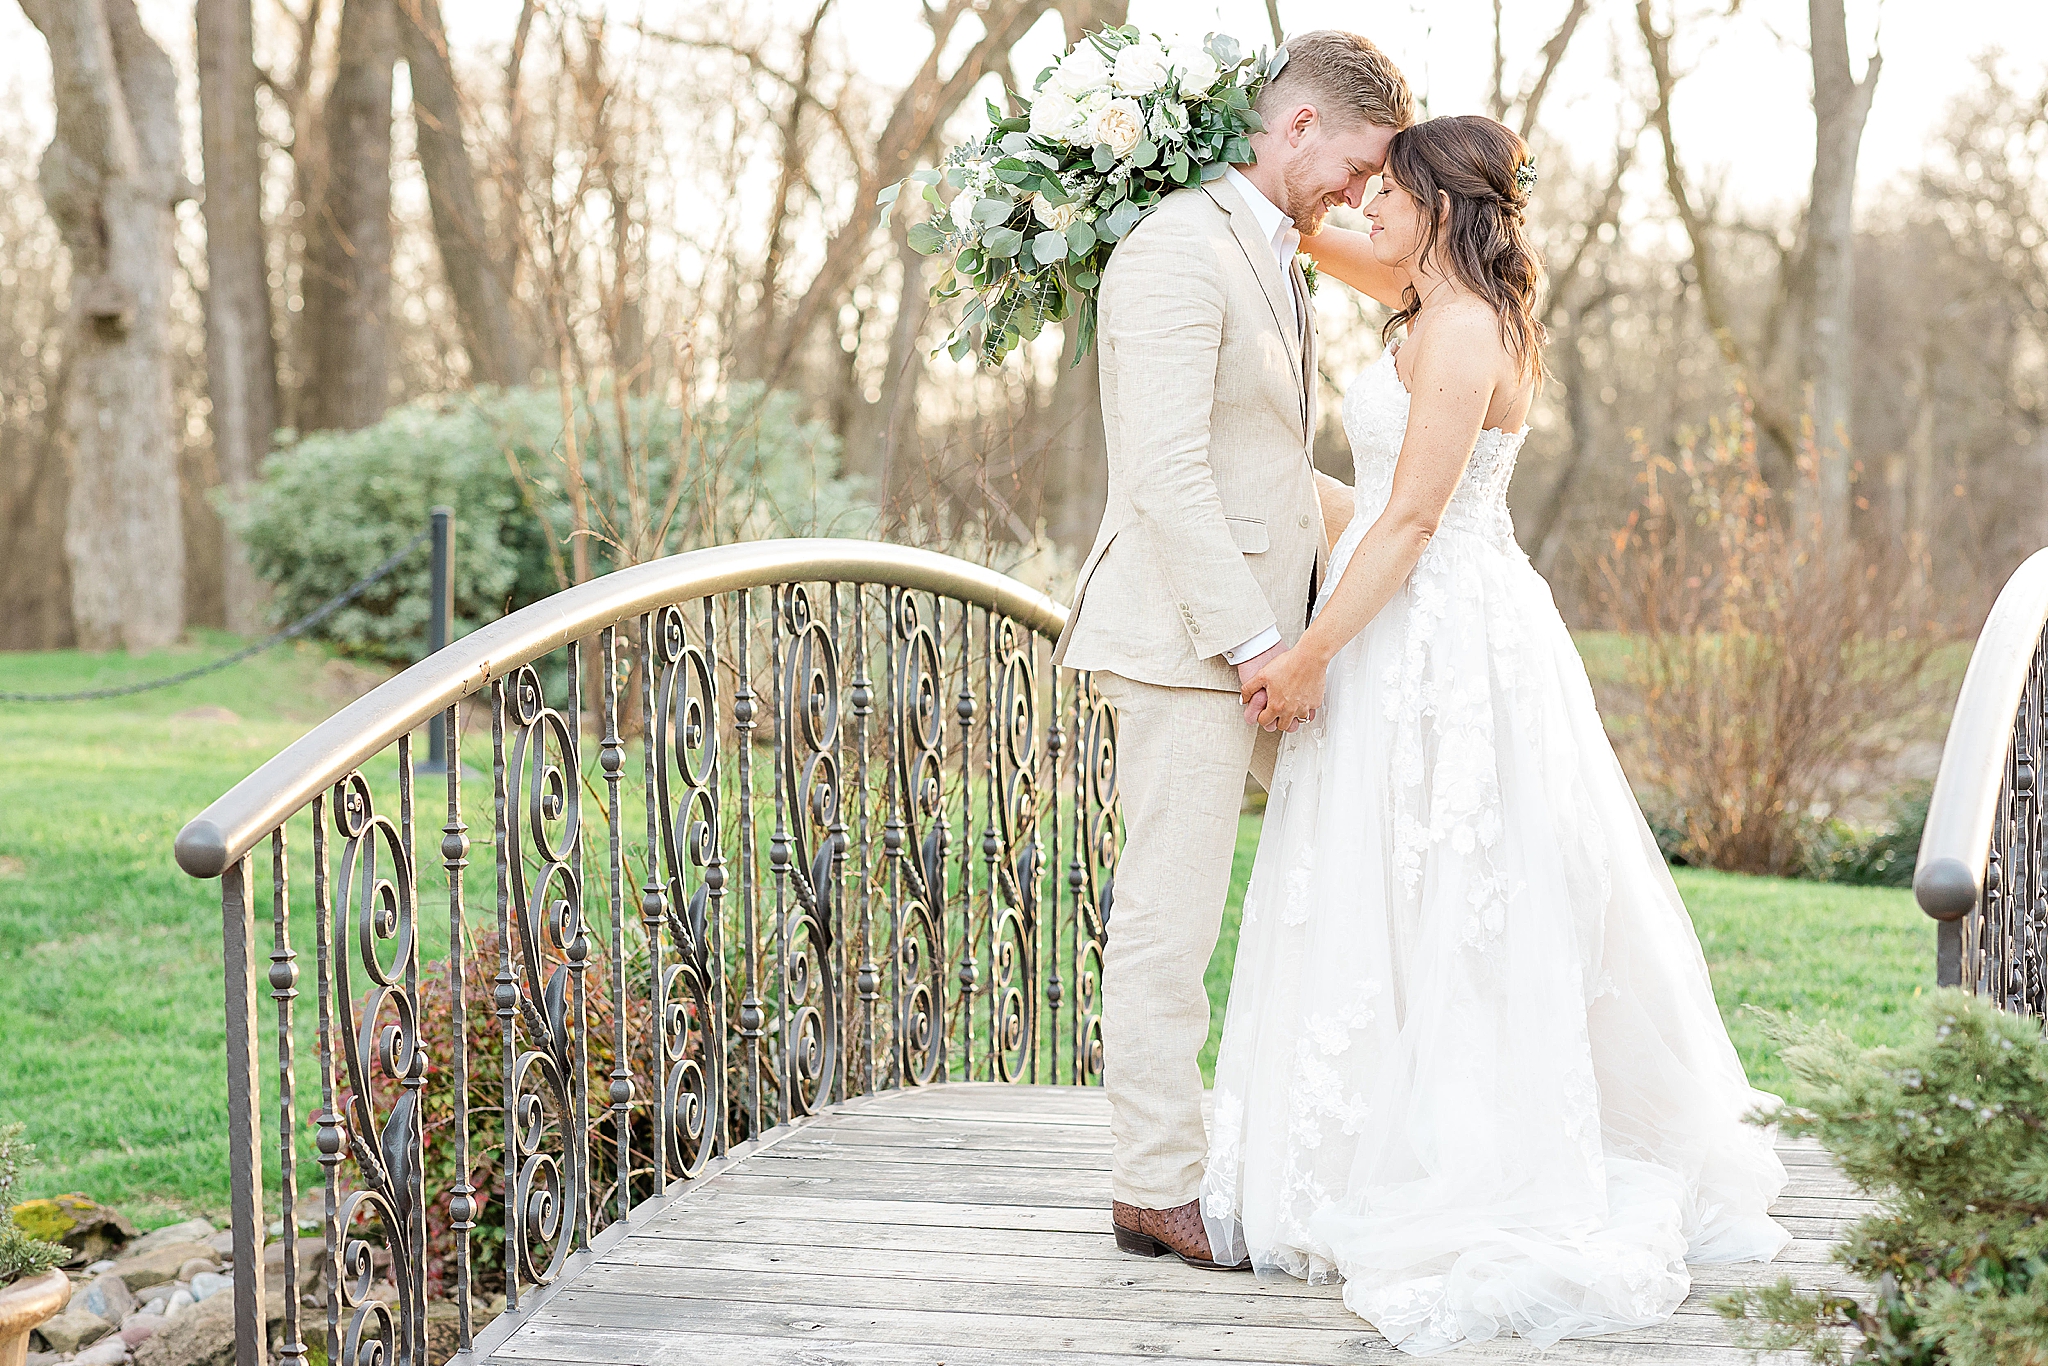 newlyweds pose on wooden bridge